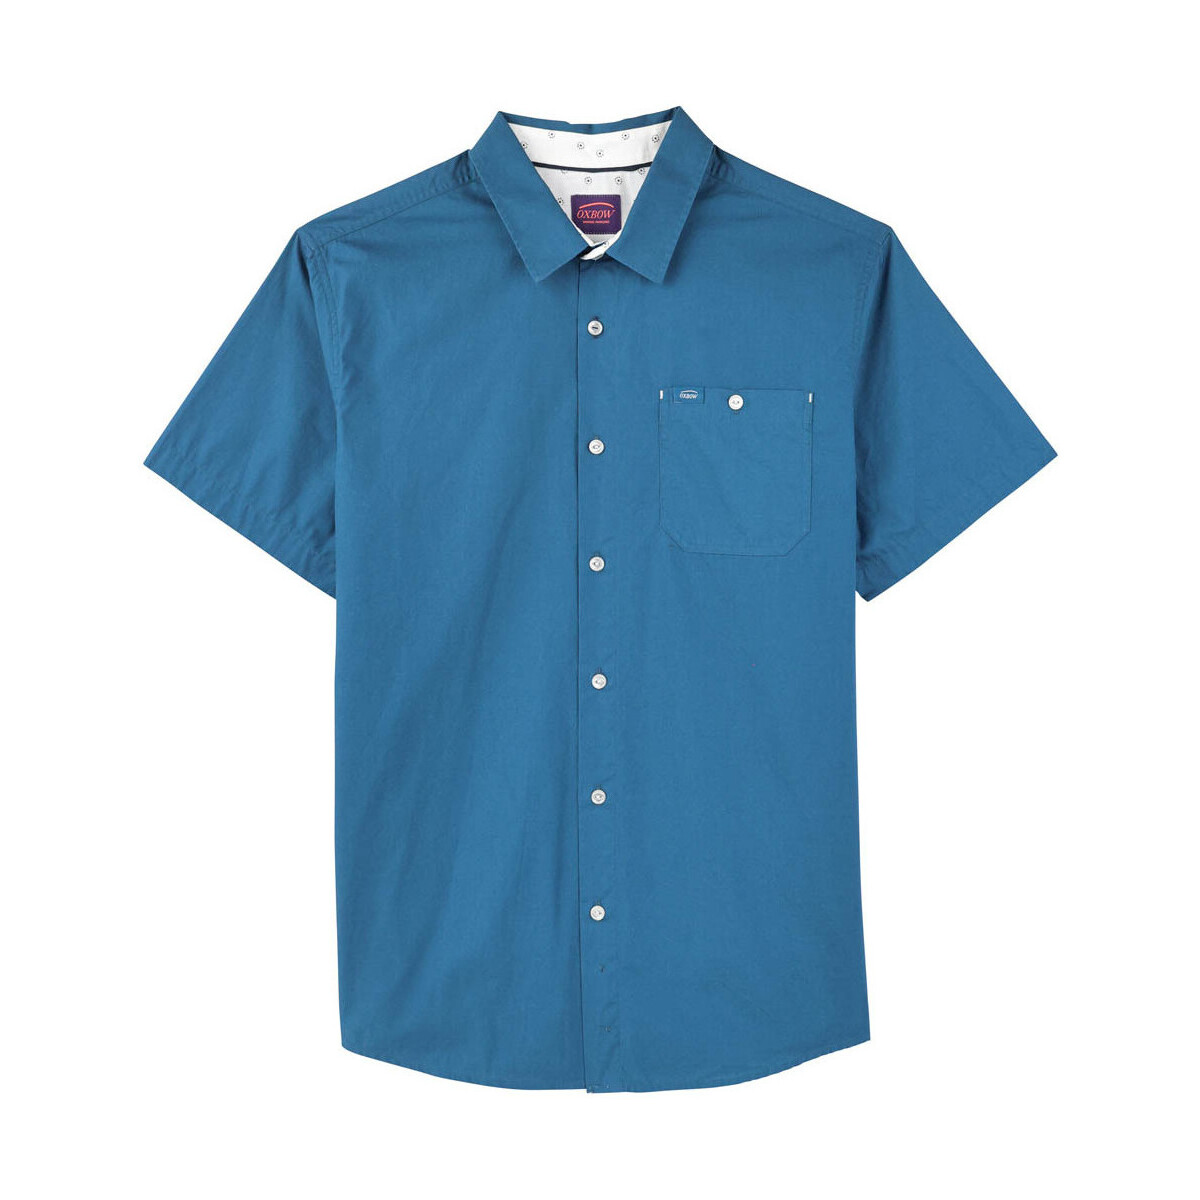 Textiel Heren Overhemden lange mouwen Oxbow Effen overhemd met korte mouwen CORY Blauw